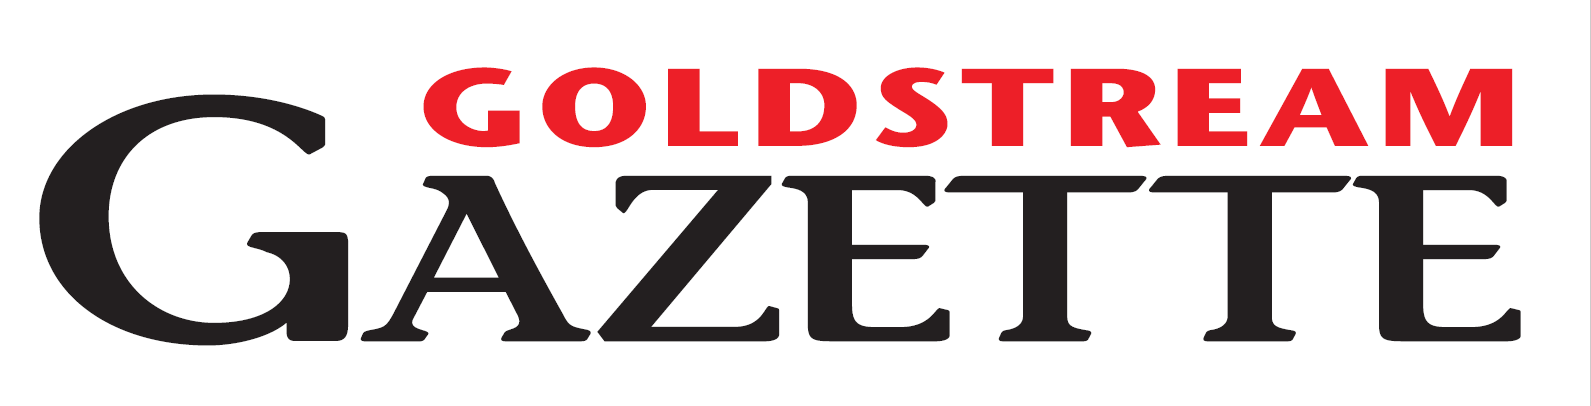 Goldstream Gazette